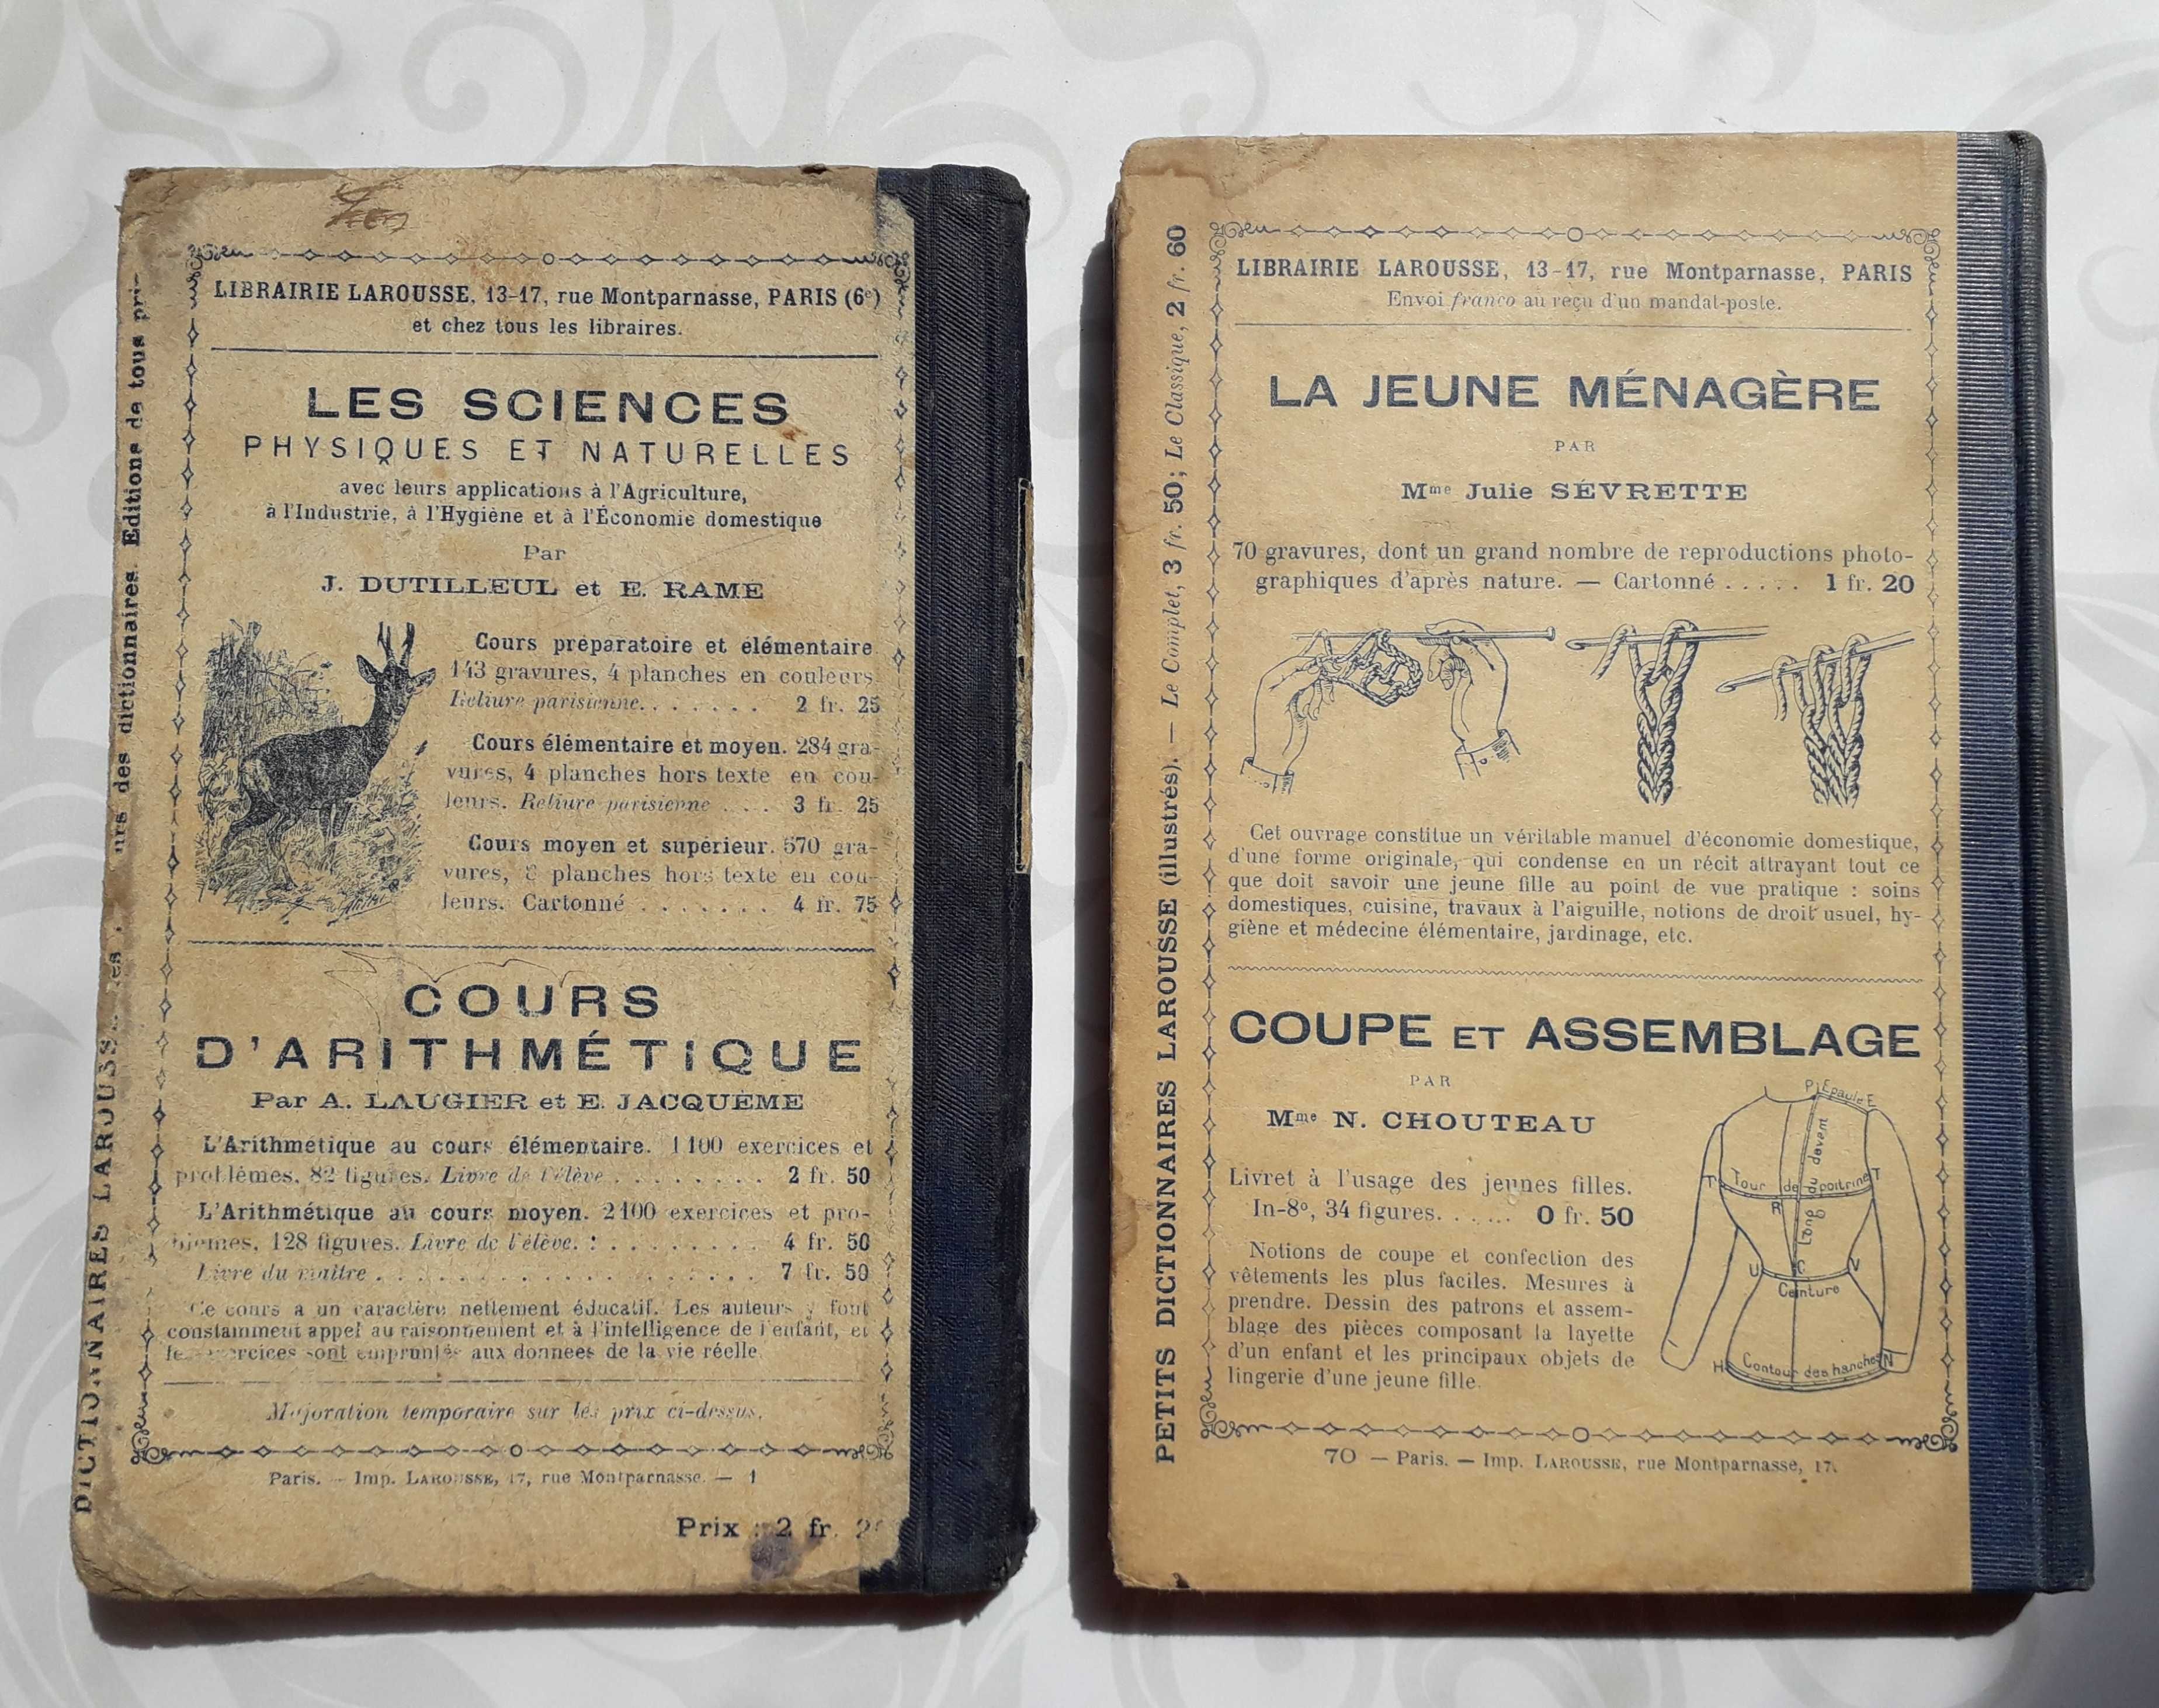 Manuale vechi in limba franceză, Larousse